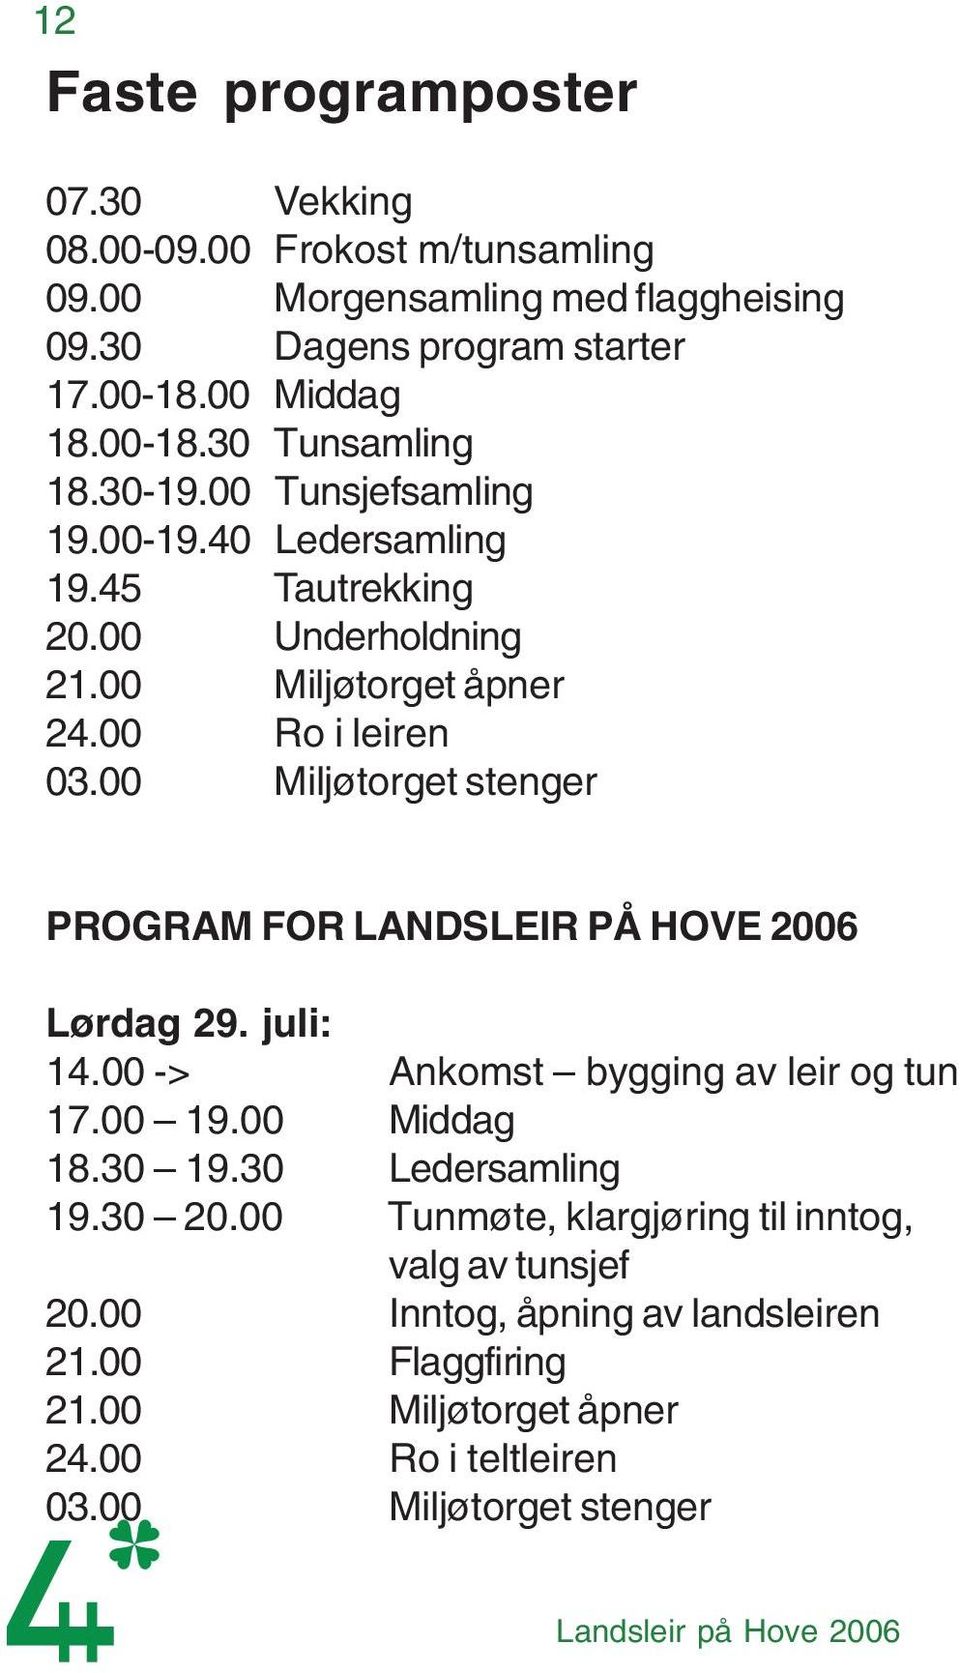 00 Miljøtorget stenger PROGRAM FOR LANDSLEIR PÅ HOVE 2006 Lørdag 29. juli: 14.00 -> Ankomst bygging av leir og tun 17.00 19.00 Middag 18.30 19.30 Ledersamling 19.